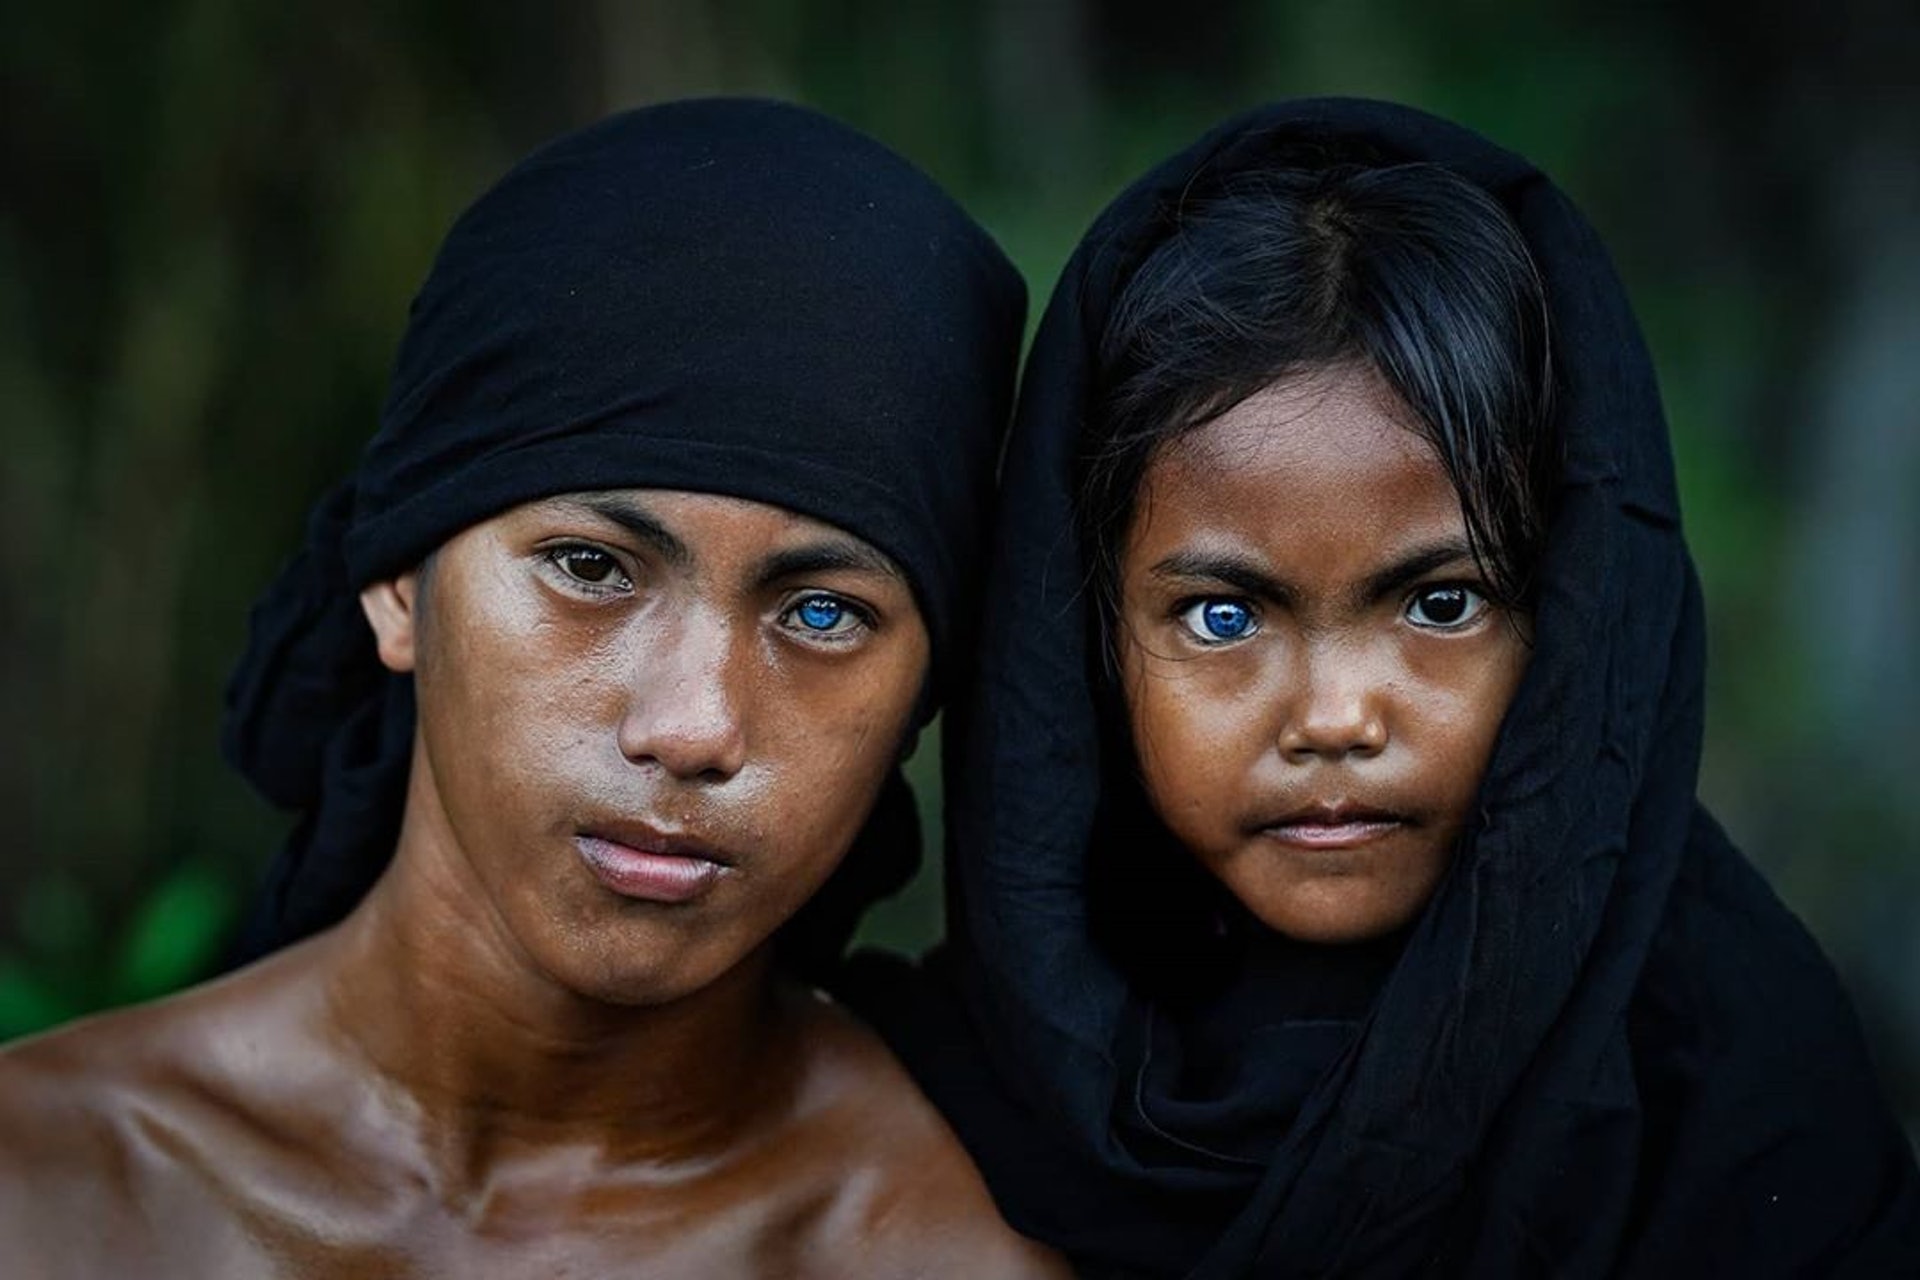 Tribe people. Племя бутон на острове бутунг Индонезии. Синдром Ваарденбурга в Индонезии. Синдром Ваарденбурга племя бутон.